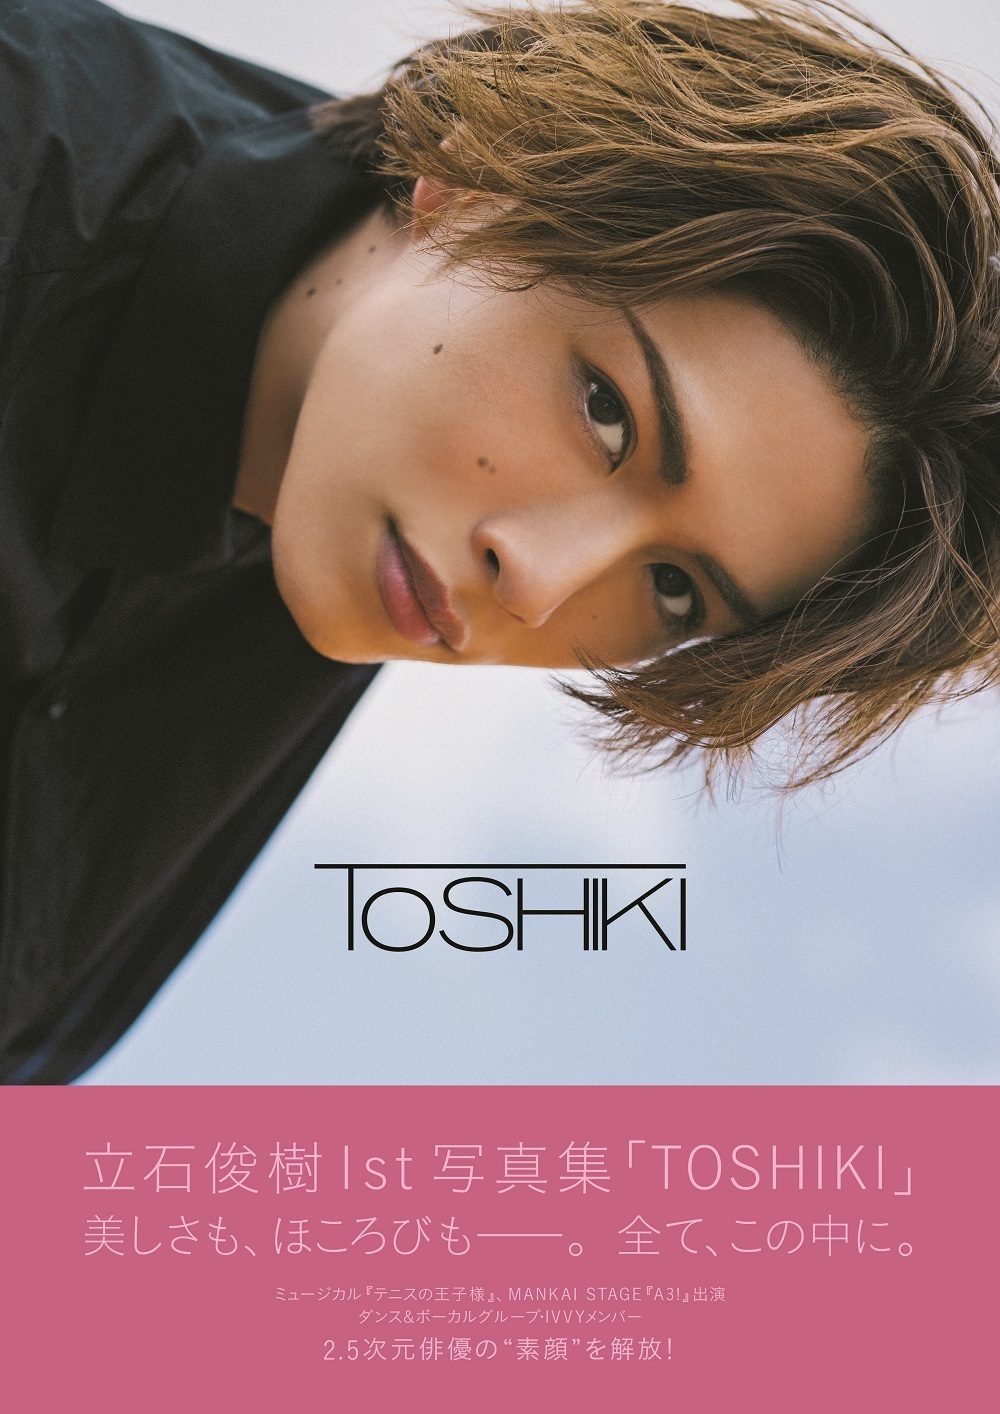 11/17(火)発売 立石俊樹1st写真集「TOSHIKI」表紙画像公開！ | 立石